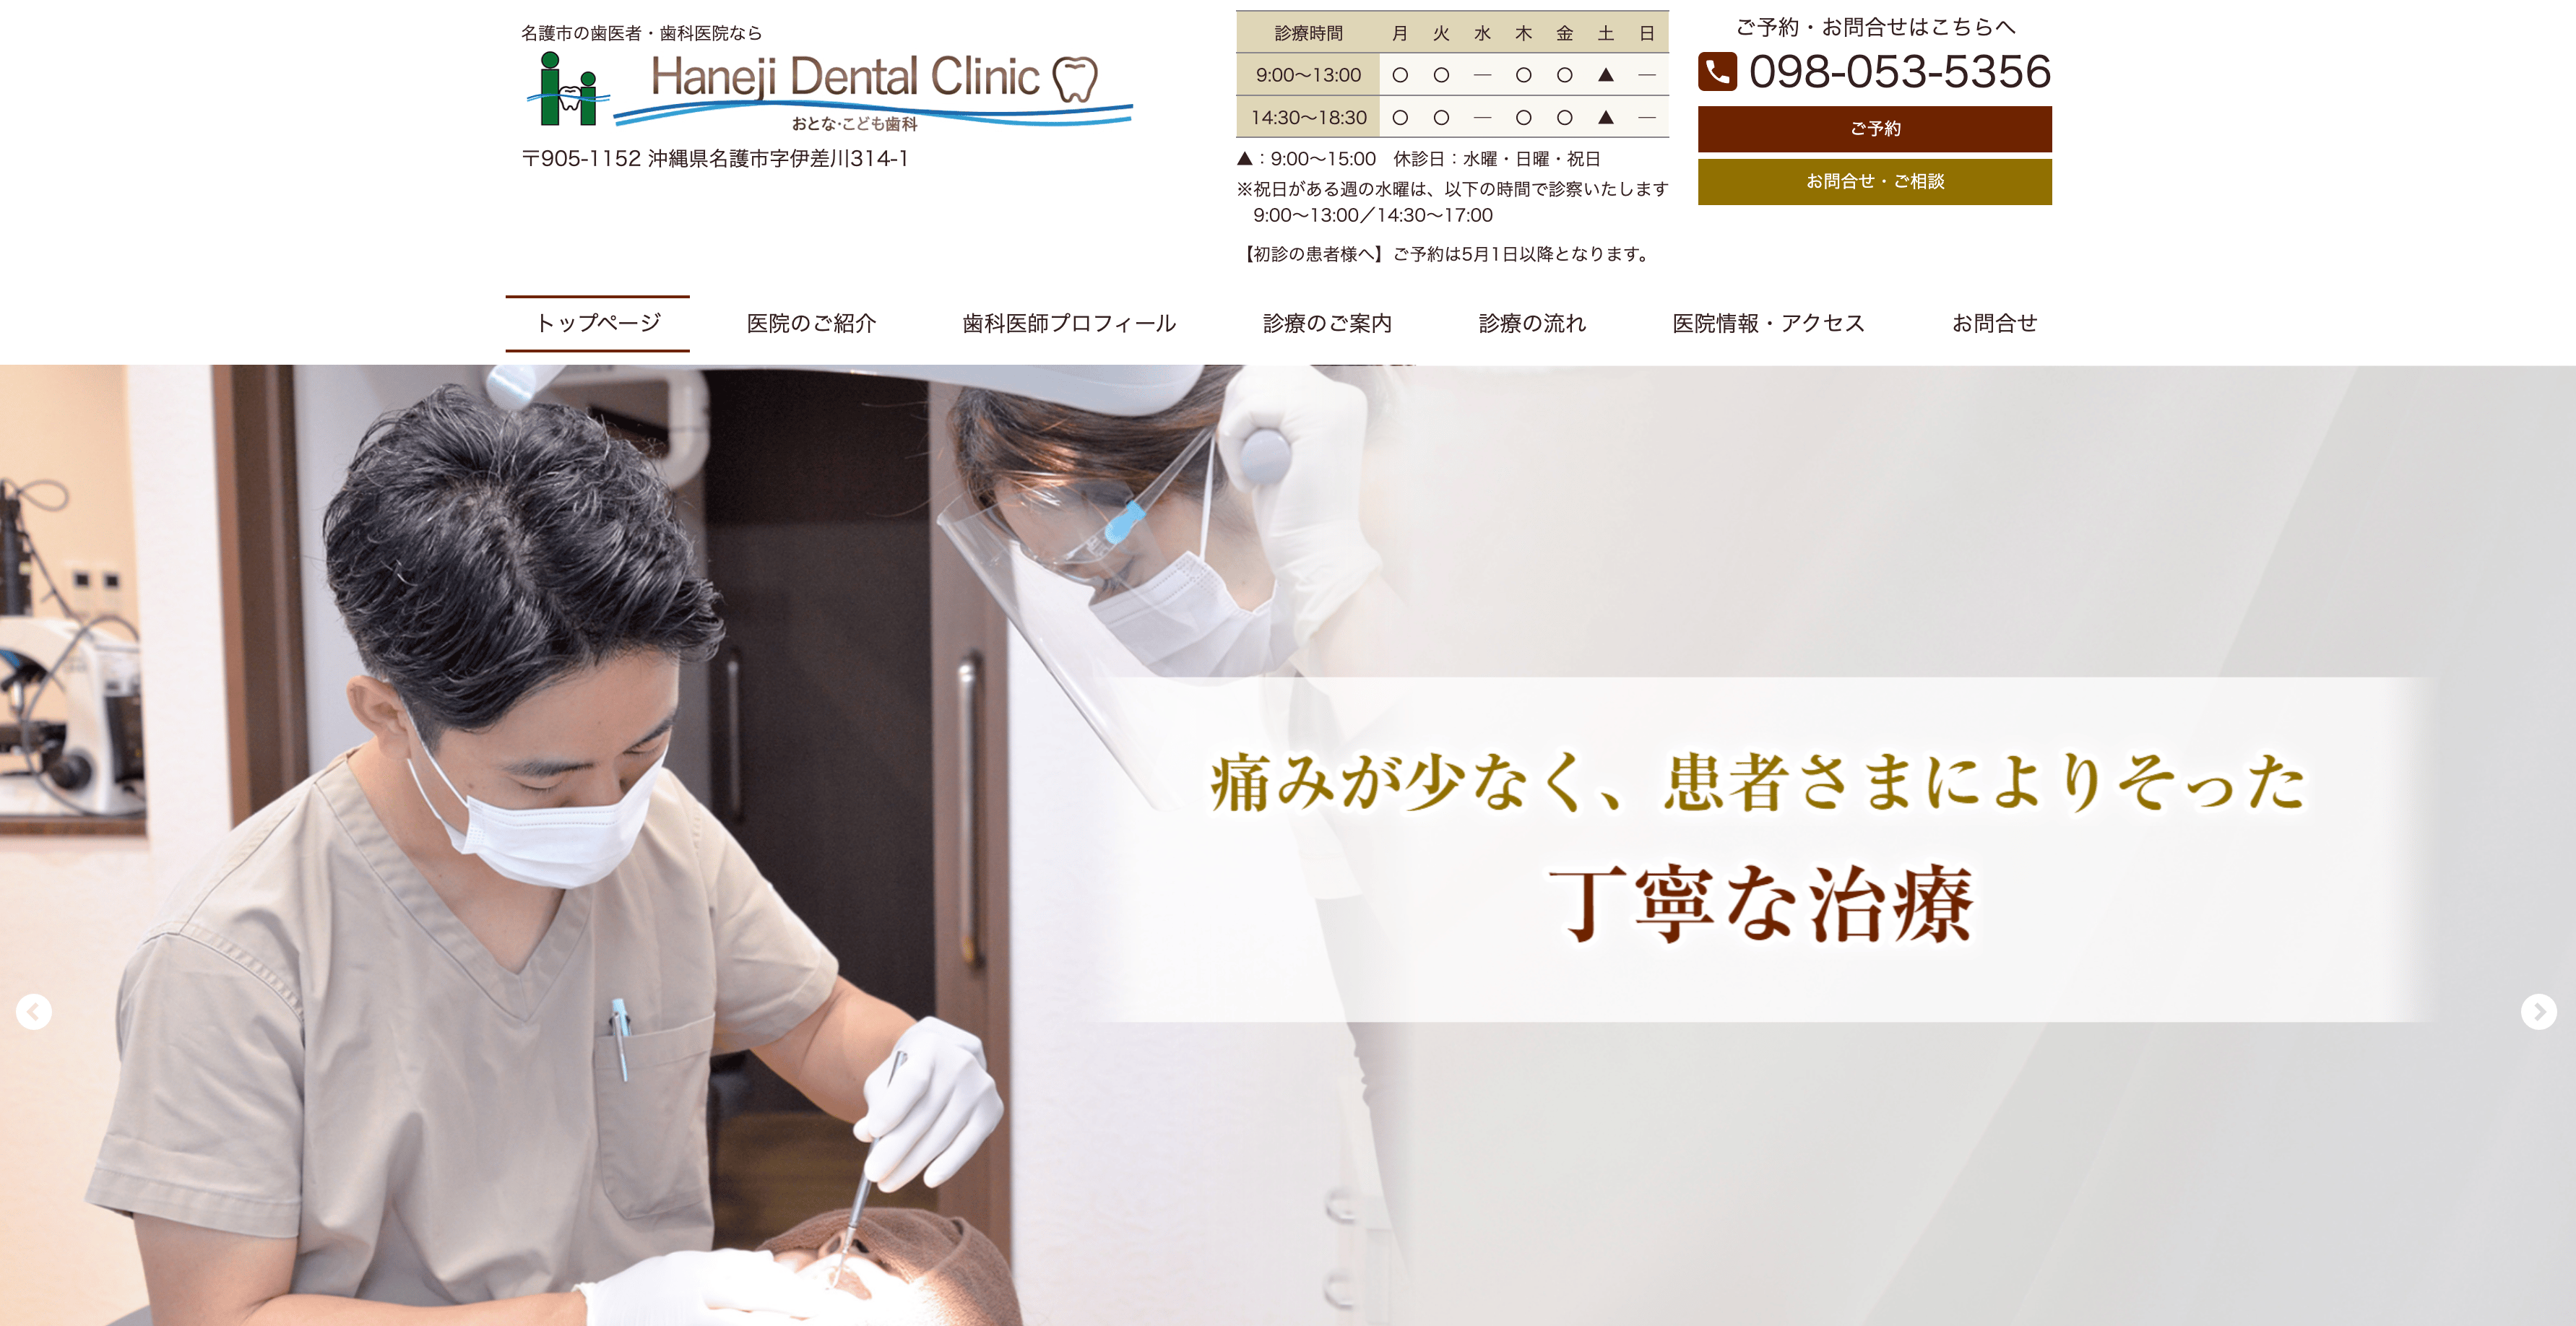 医療法人羽地会Haneji Dental Clinic おとな・こども歯科